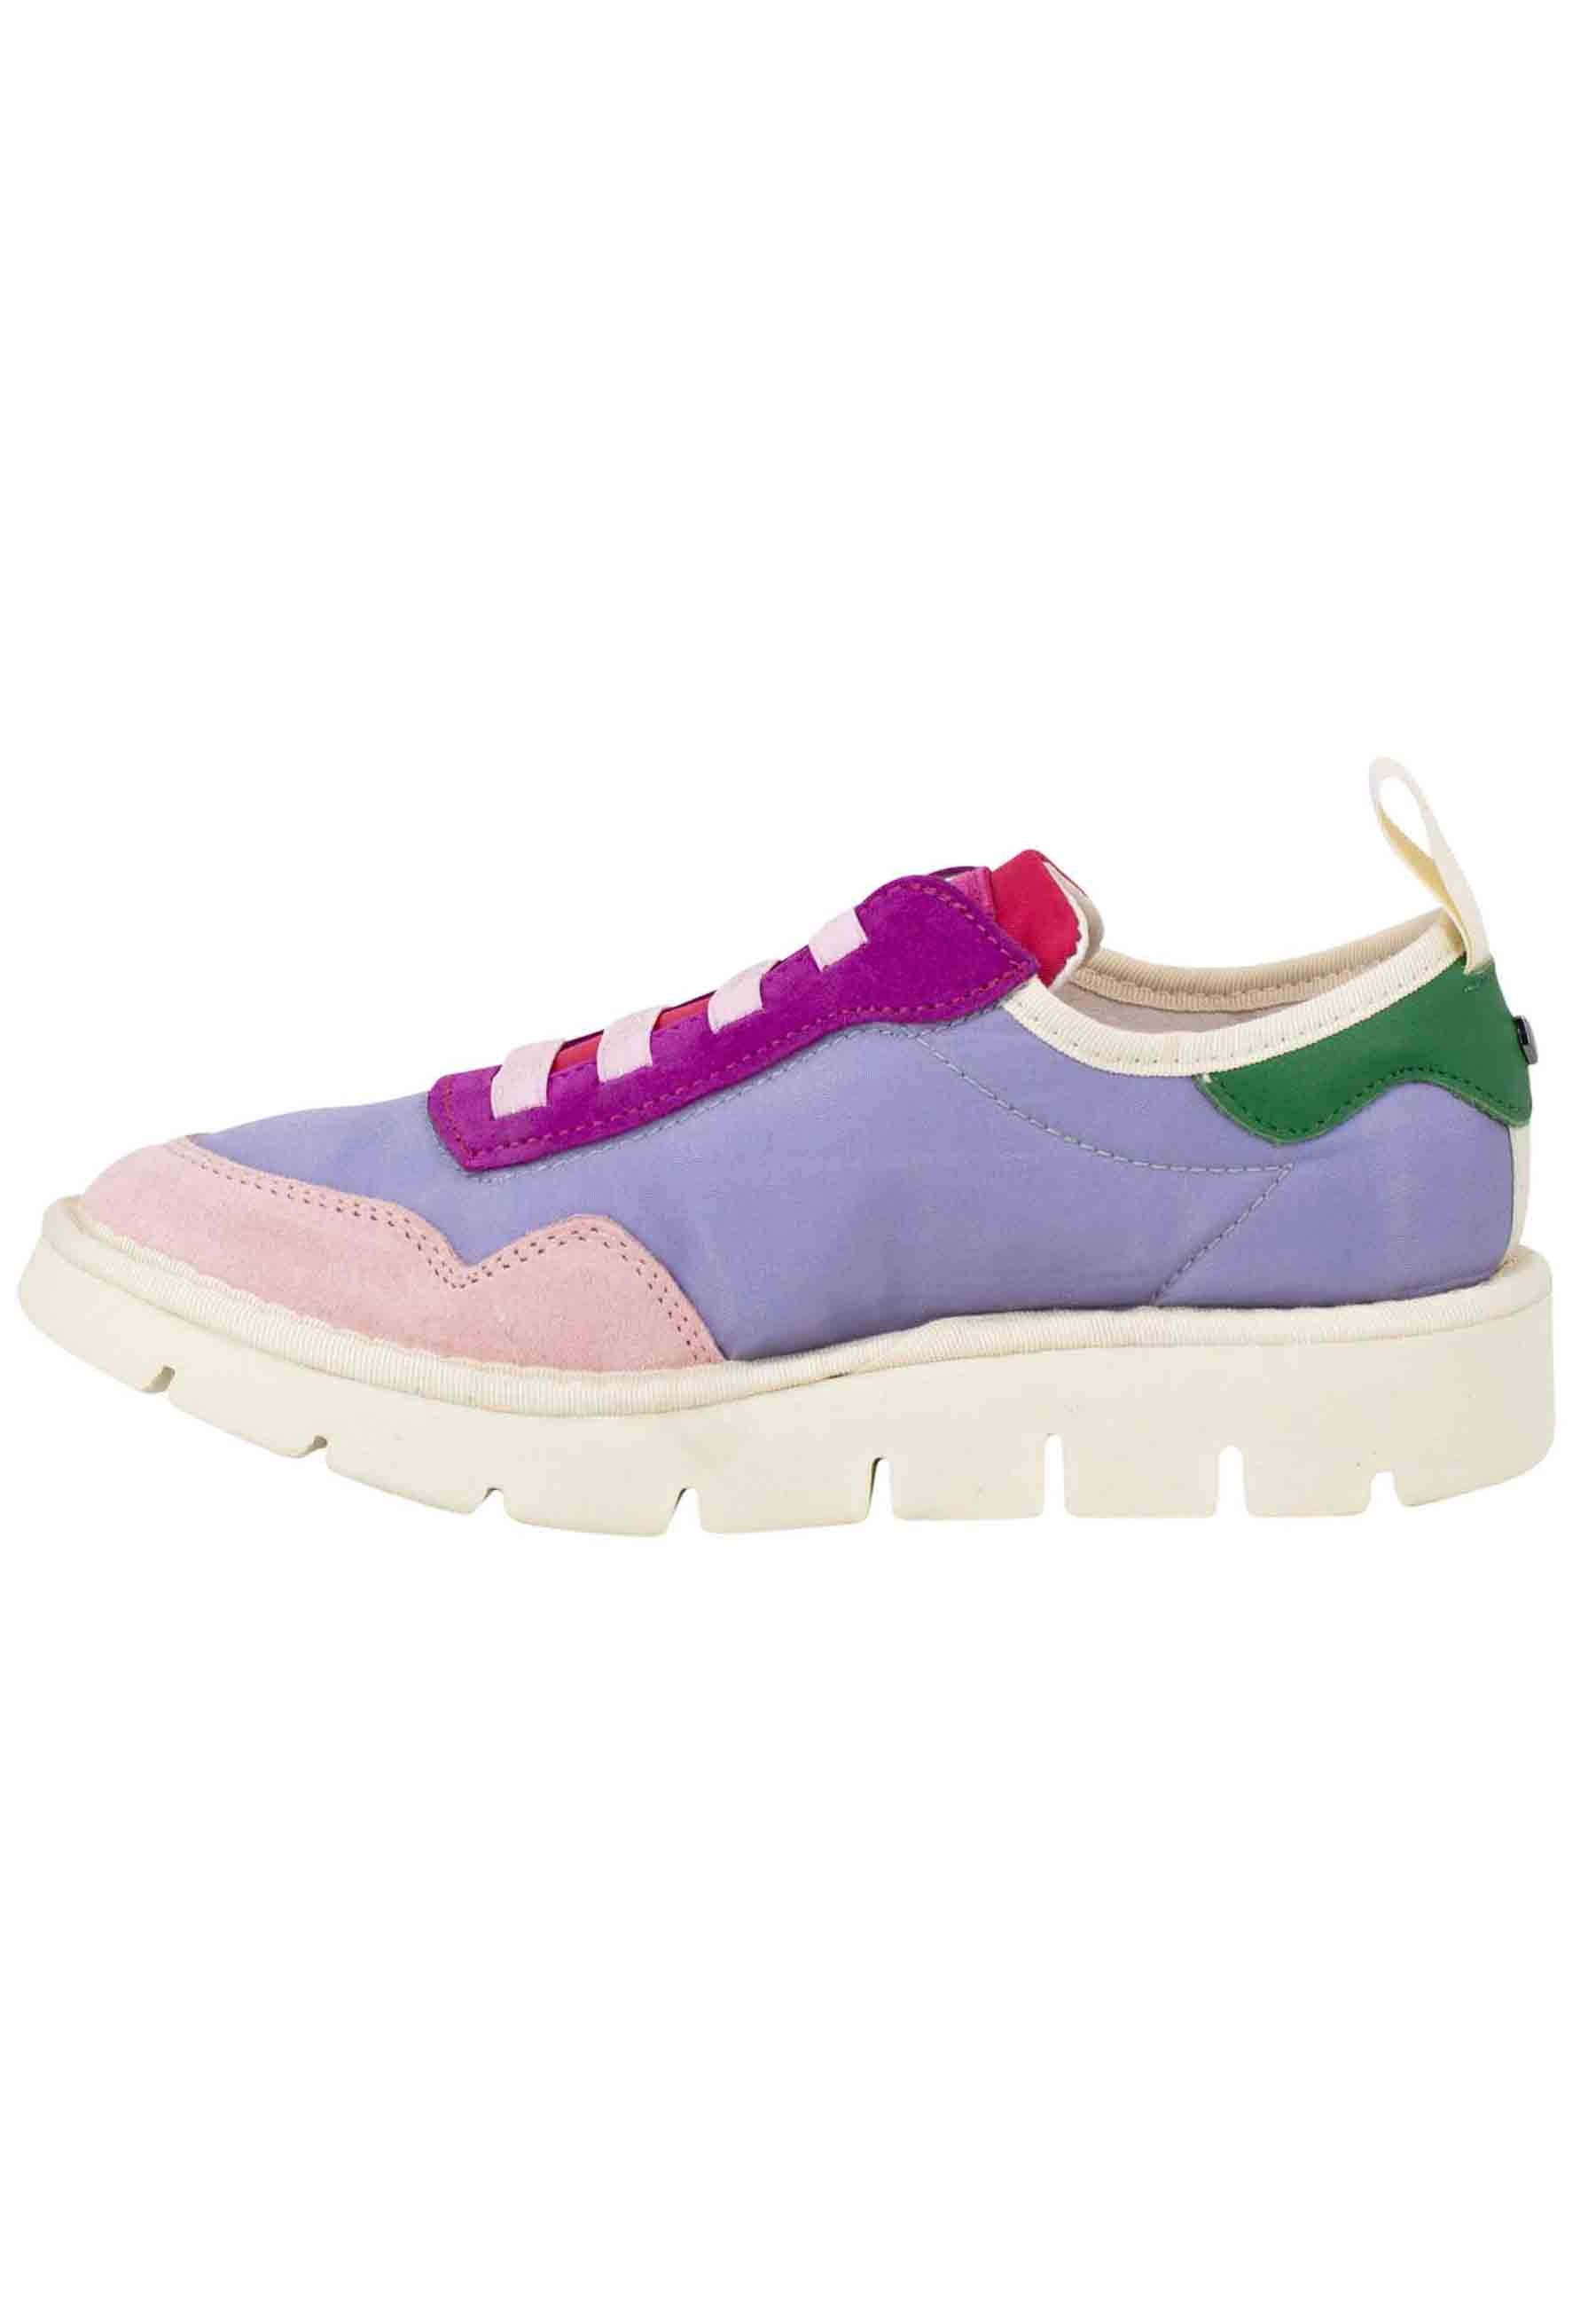 Sneakers donna in tessuto lilla multicolor 00203012